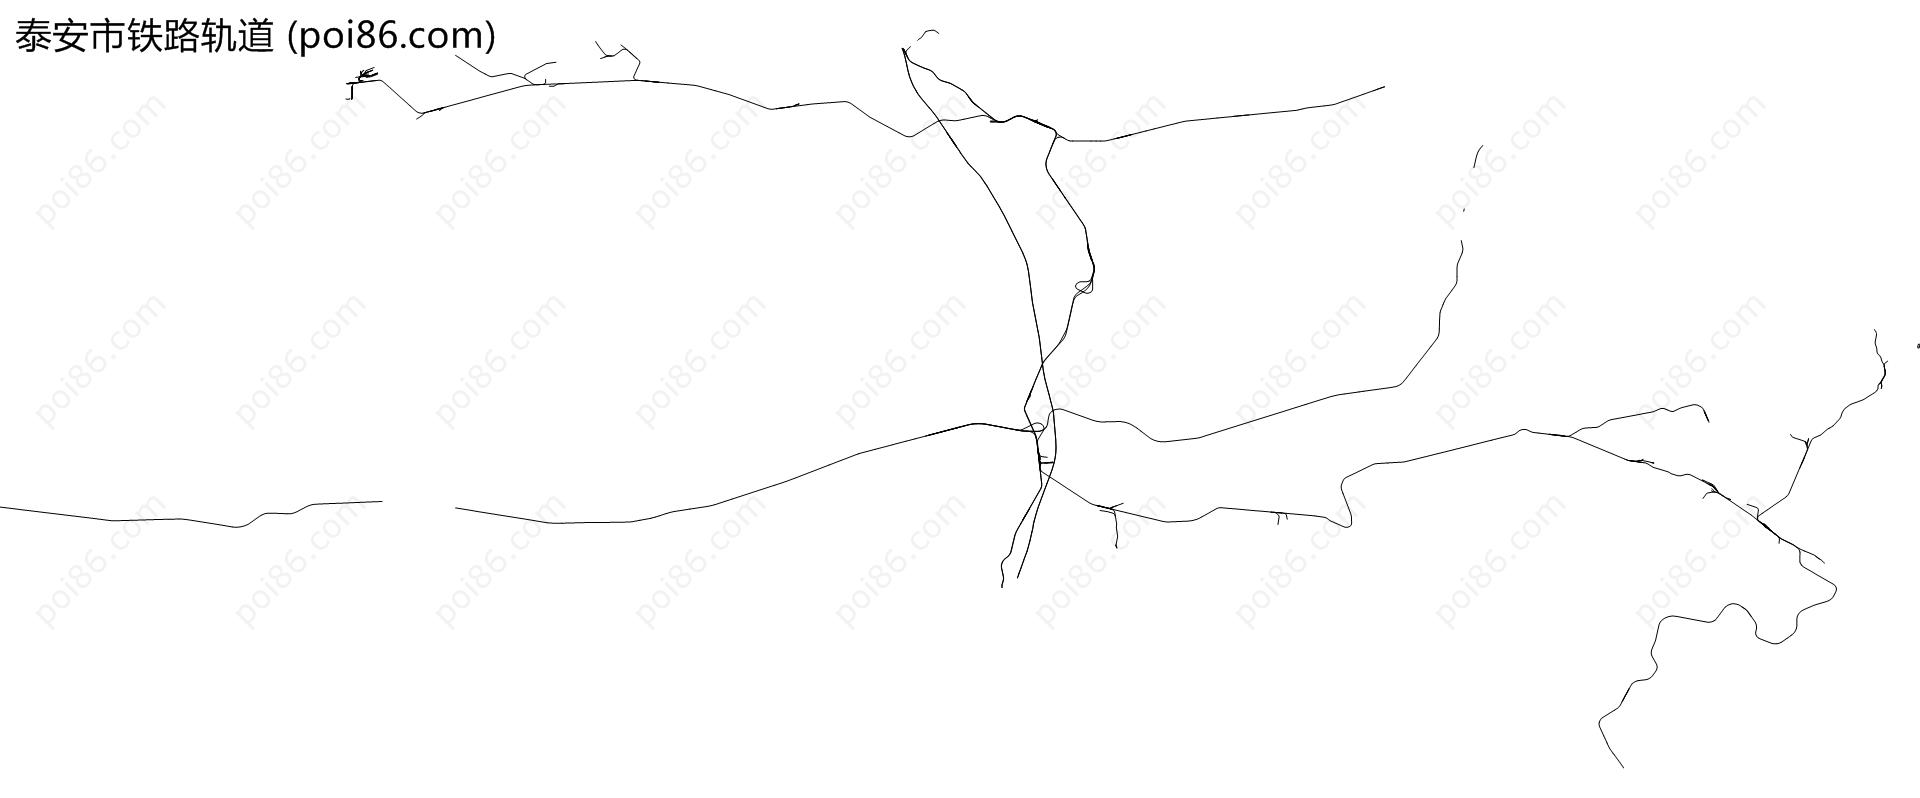 泰安市铁路轨道地图